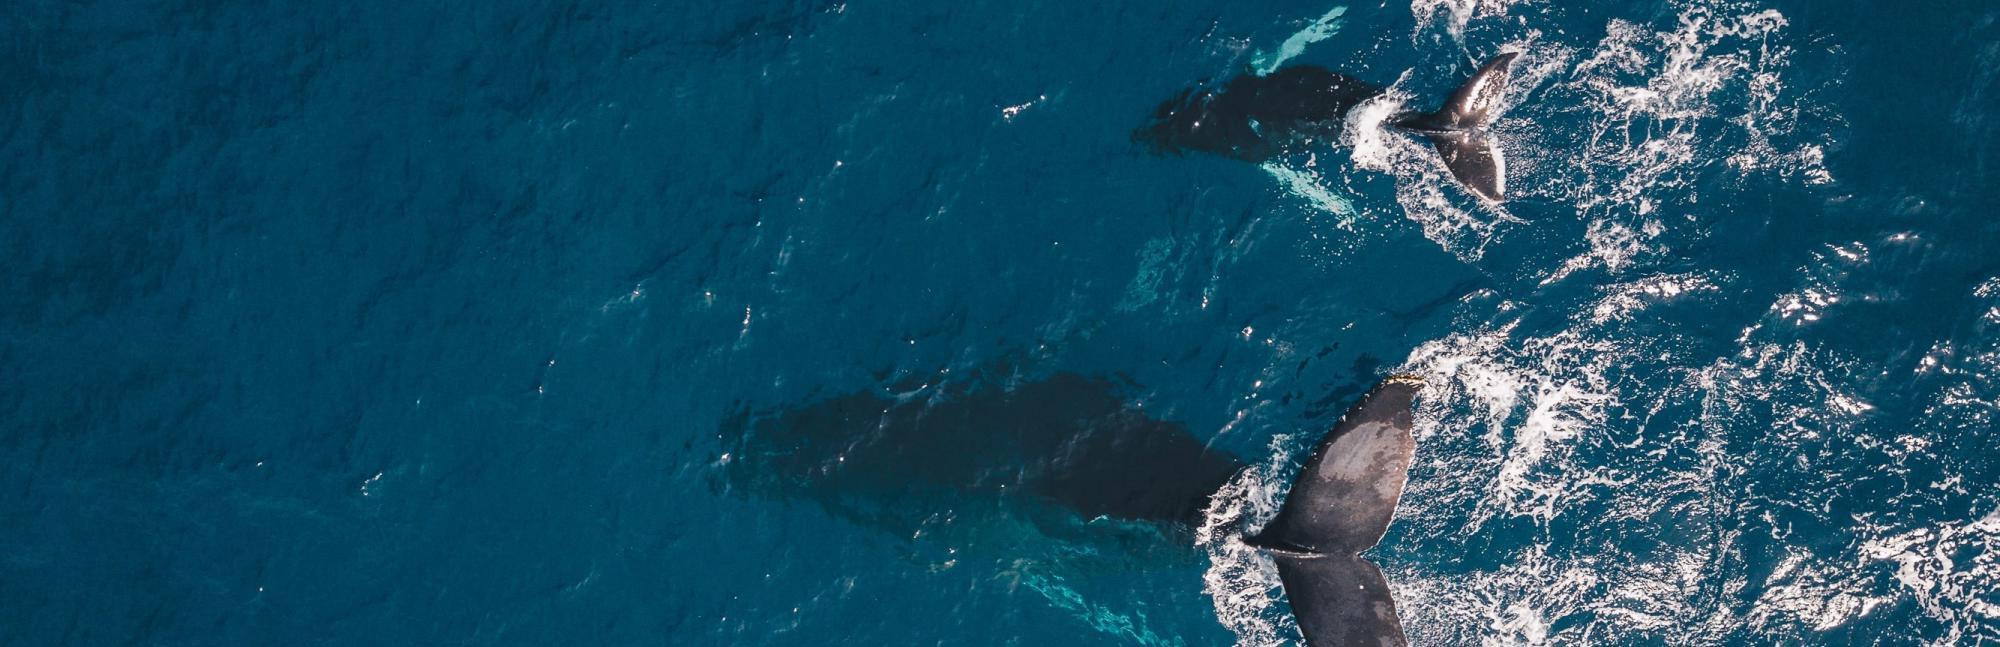 Blue whale fin in ocean